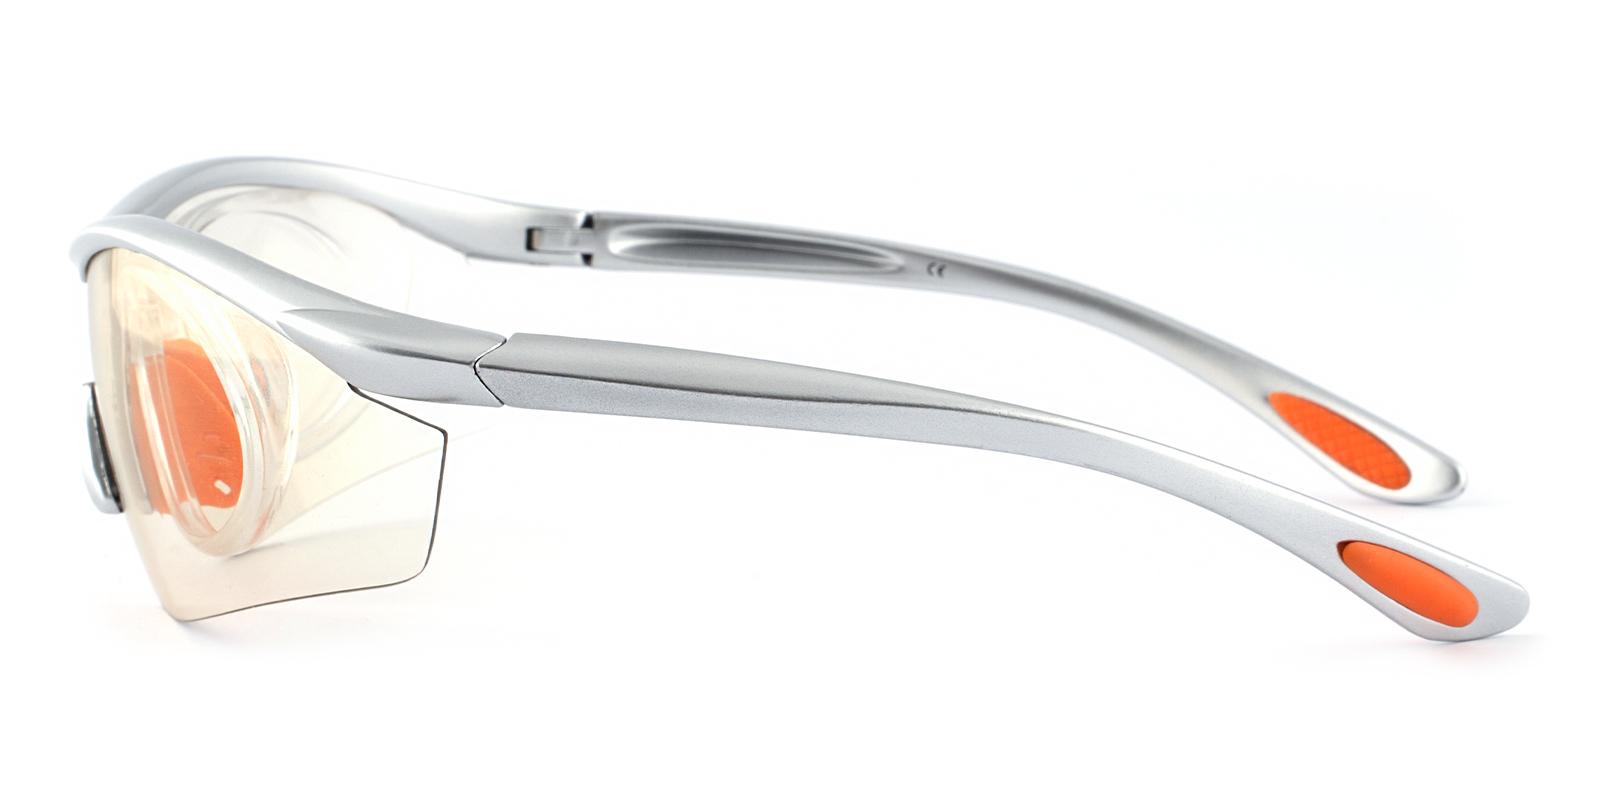 Gustavus Silver Plastic NosePads , SportsGlasses Frames from ABBE Glasses